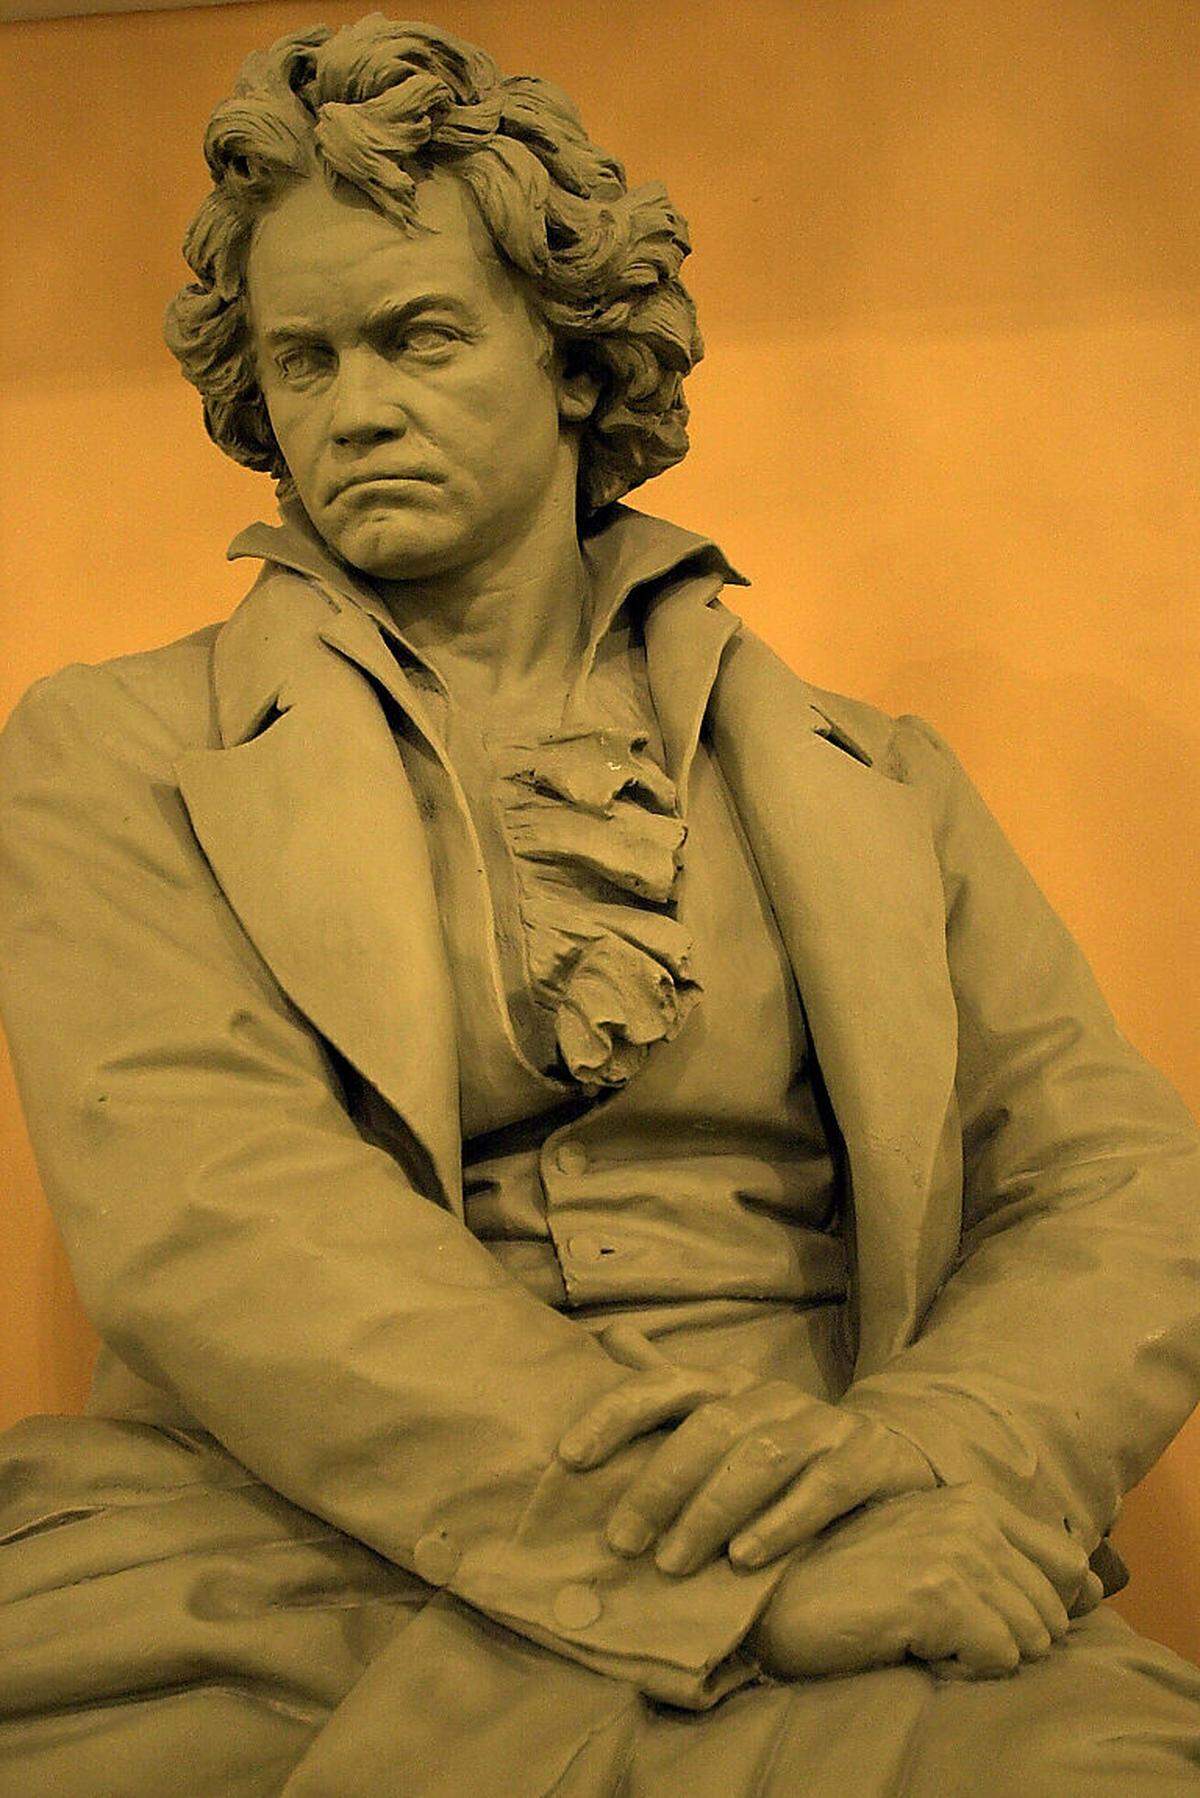 Die dritte und endgültige Fassung von Ludwig van Beethovens Oper "Fidelio" wurde am 23. Mai 1814 im Wiener Kärntnertortheater uraufgeführt. Der Komponist konnte damals ein sorgenfreies Leben führen, es gab immer wieder Mäzene, er war der "Superstar" der Wiener Musikszene. Besonders berühmt war seine Kantate "Wellingtons Sieg oder die Schlacht bei Vittoria", die den Sieg des britischen Feldherrn über Napoleon verherrlichte. Vergessen war, dass Beethoven einst seine "Eroica" dem französischen "Heroen" gewidmet hatte. Die Oper "Fidelio" thematisiert nun die Befreiung von despotischer Gewalt und staatsbürgerliche Brüderlichkeit. Die Hymne auf Gerechtigkeit, Freiheit und Humanität am Ende der Oper riss die Besucher in Wien stets zu Begeisterungsstürmen hin. Der "glorreiche Augenblick" - damit verband sich auch die Befreiung von der napoleonischen Herrschaft.